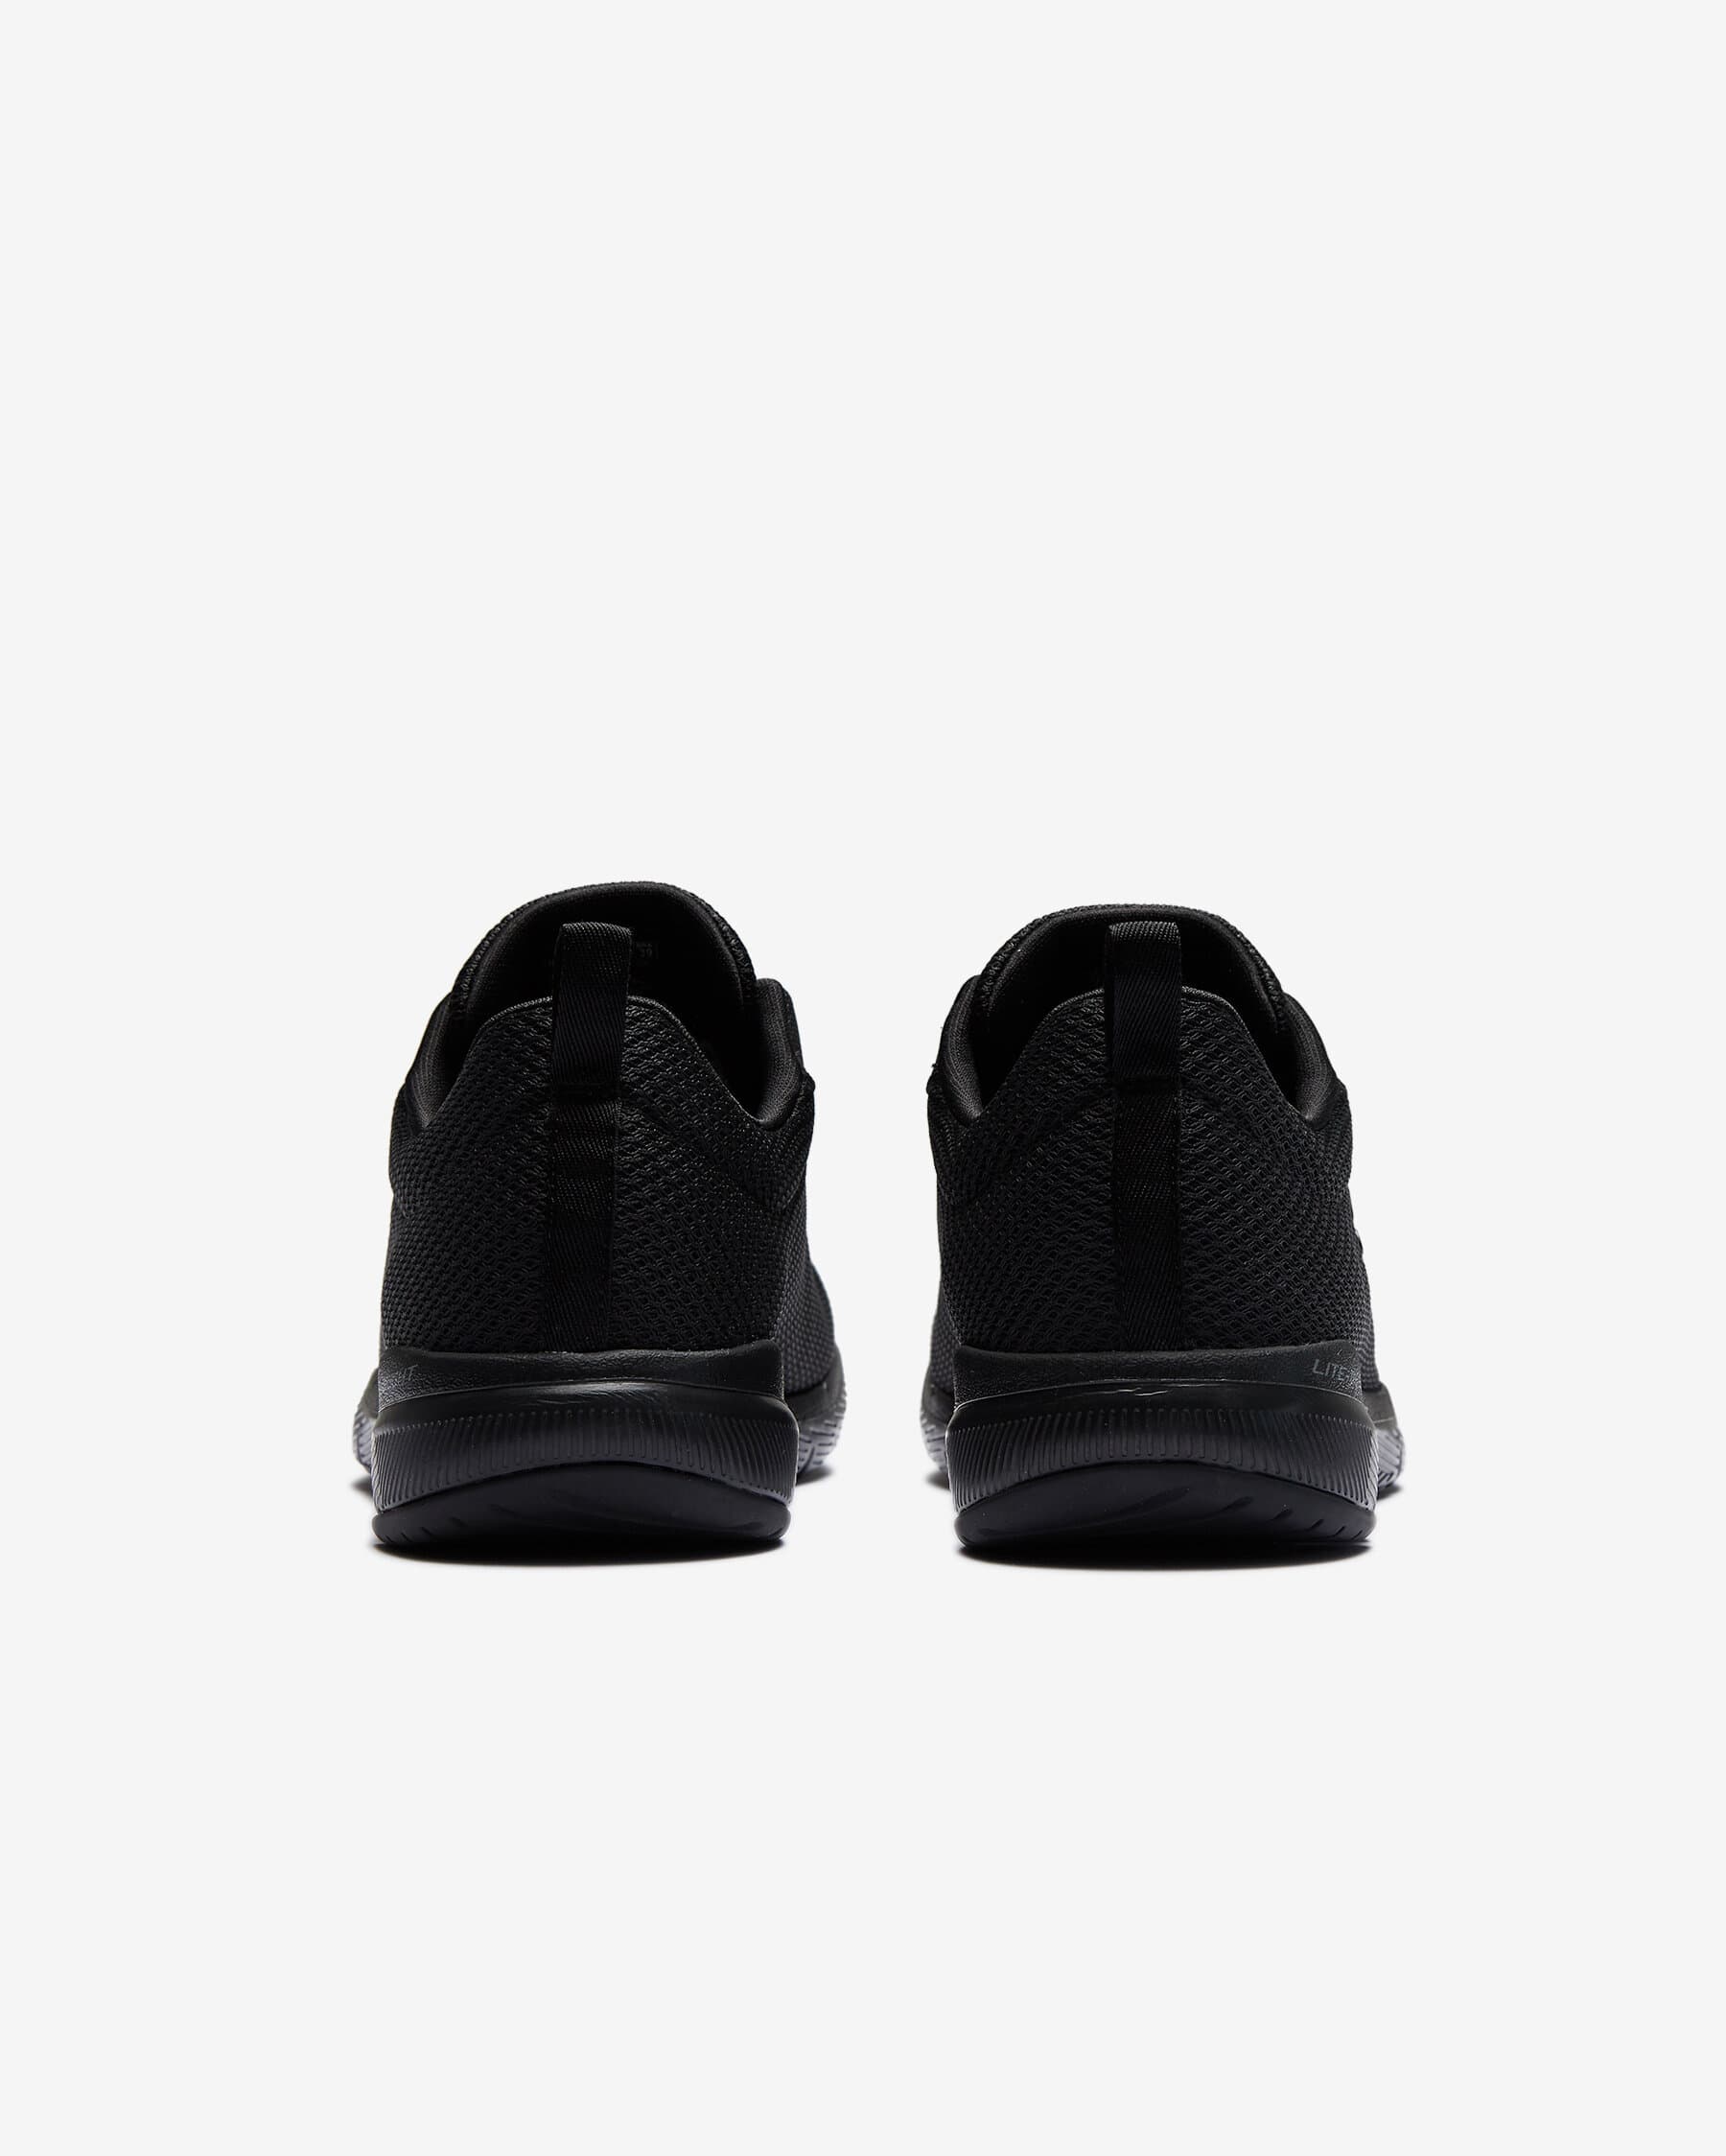 Flex Appeal 3.0-Fırst Insight Kadın Siyah Spor Ayakkabı (S13070 BBK)